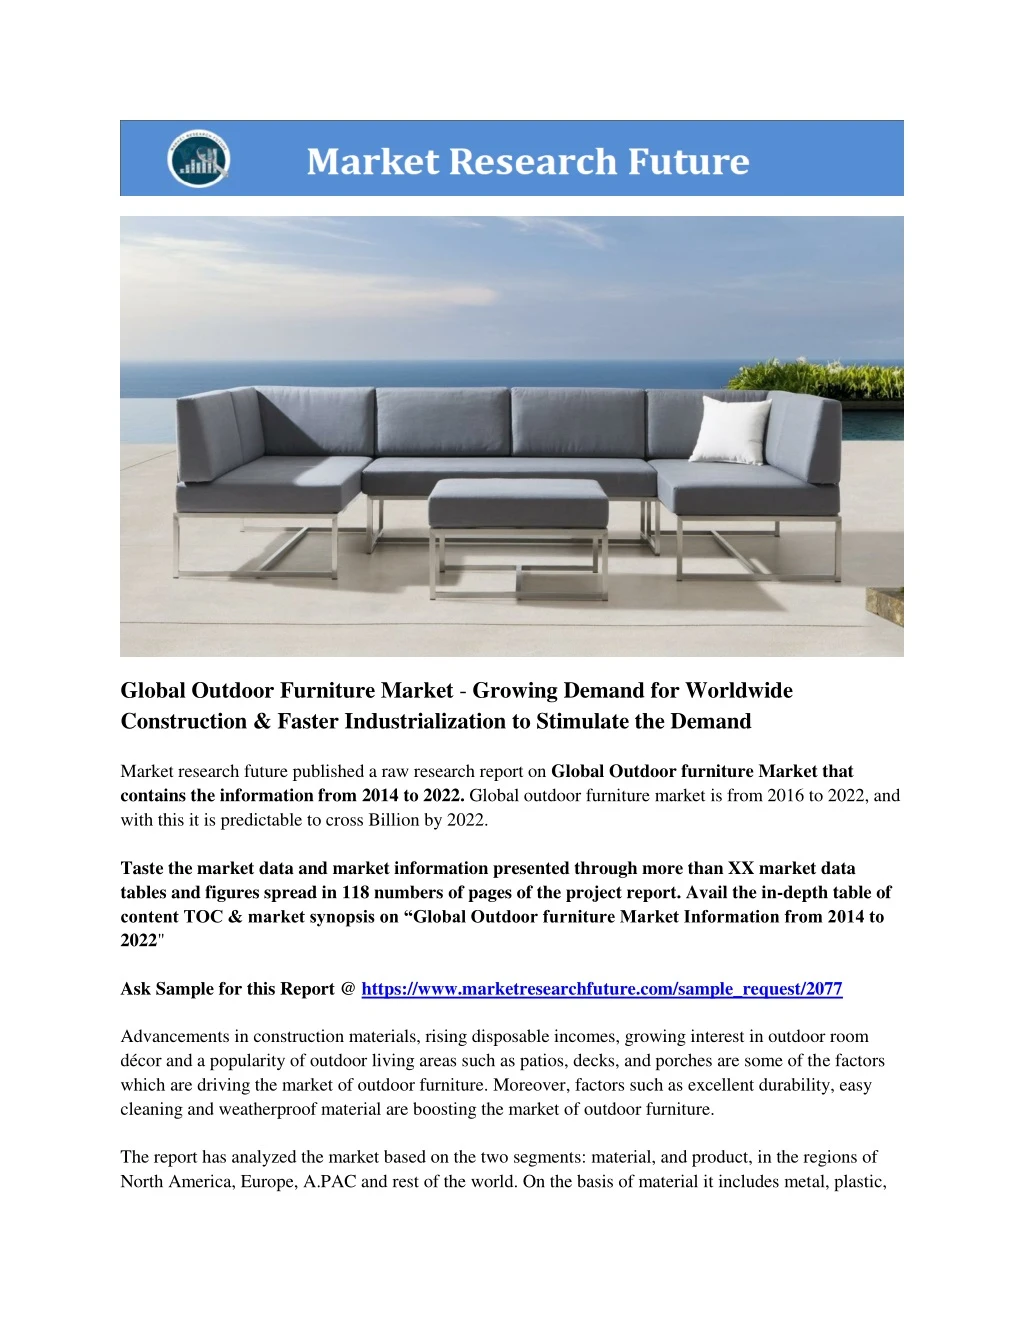 global outdoor furniture market growing demand